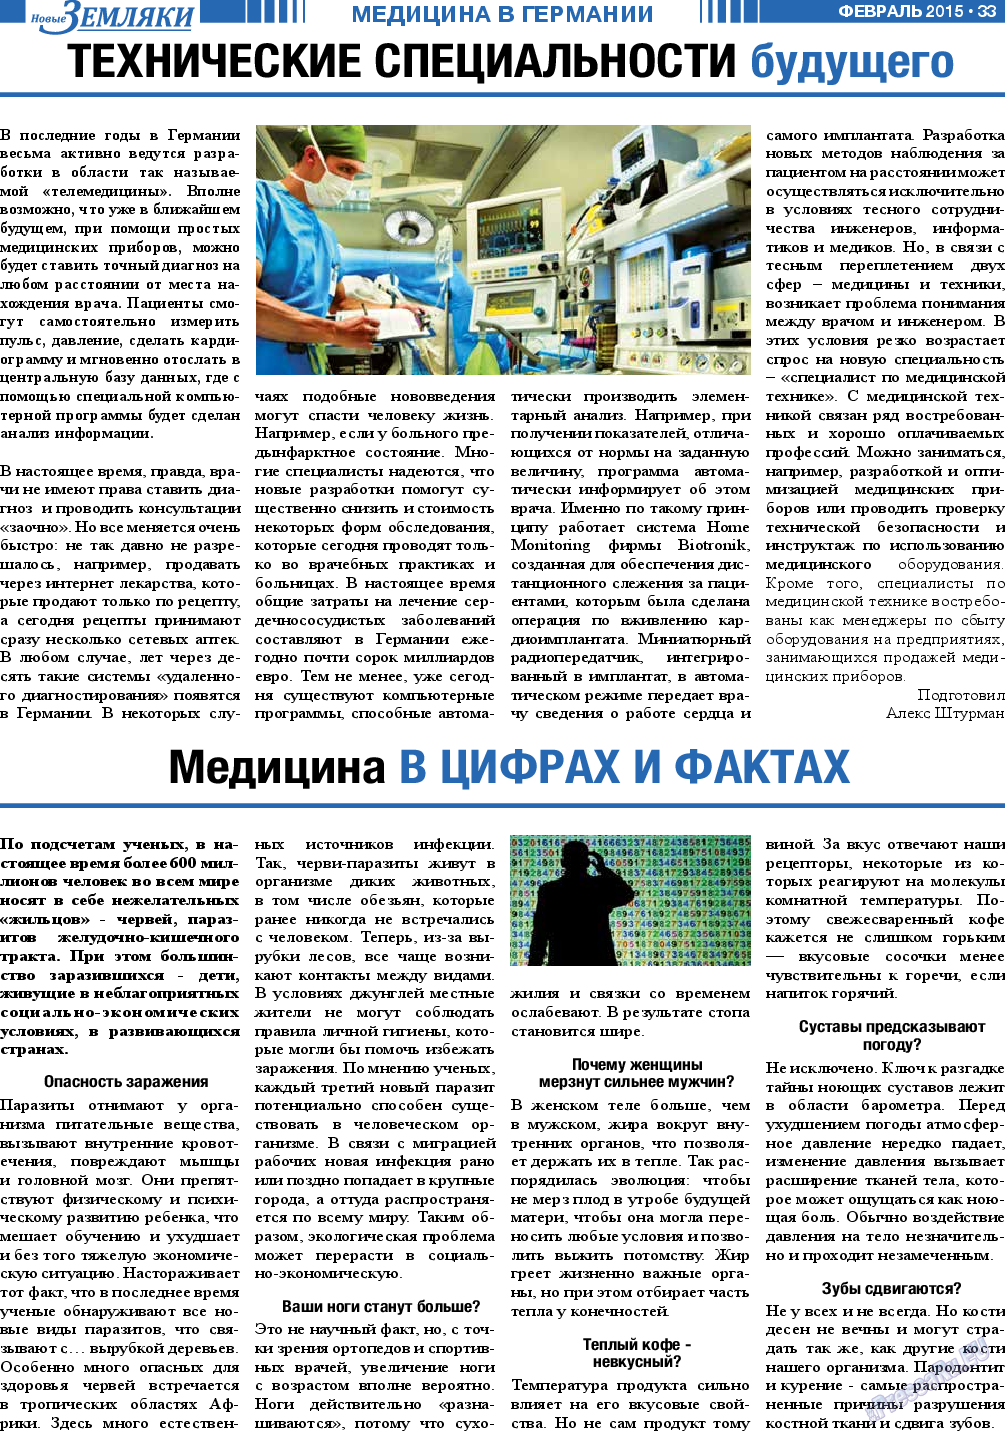 Новые Земляки, газета. 2015 №2 стр.33